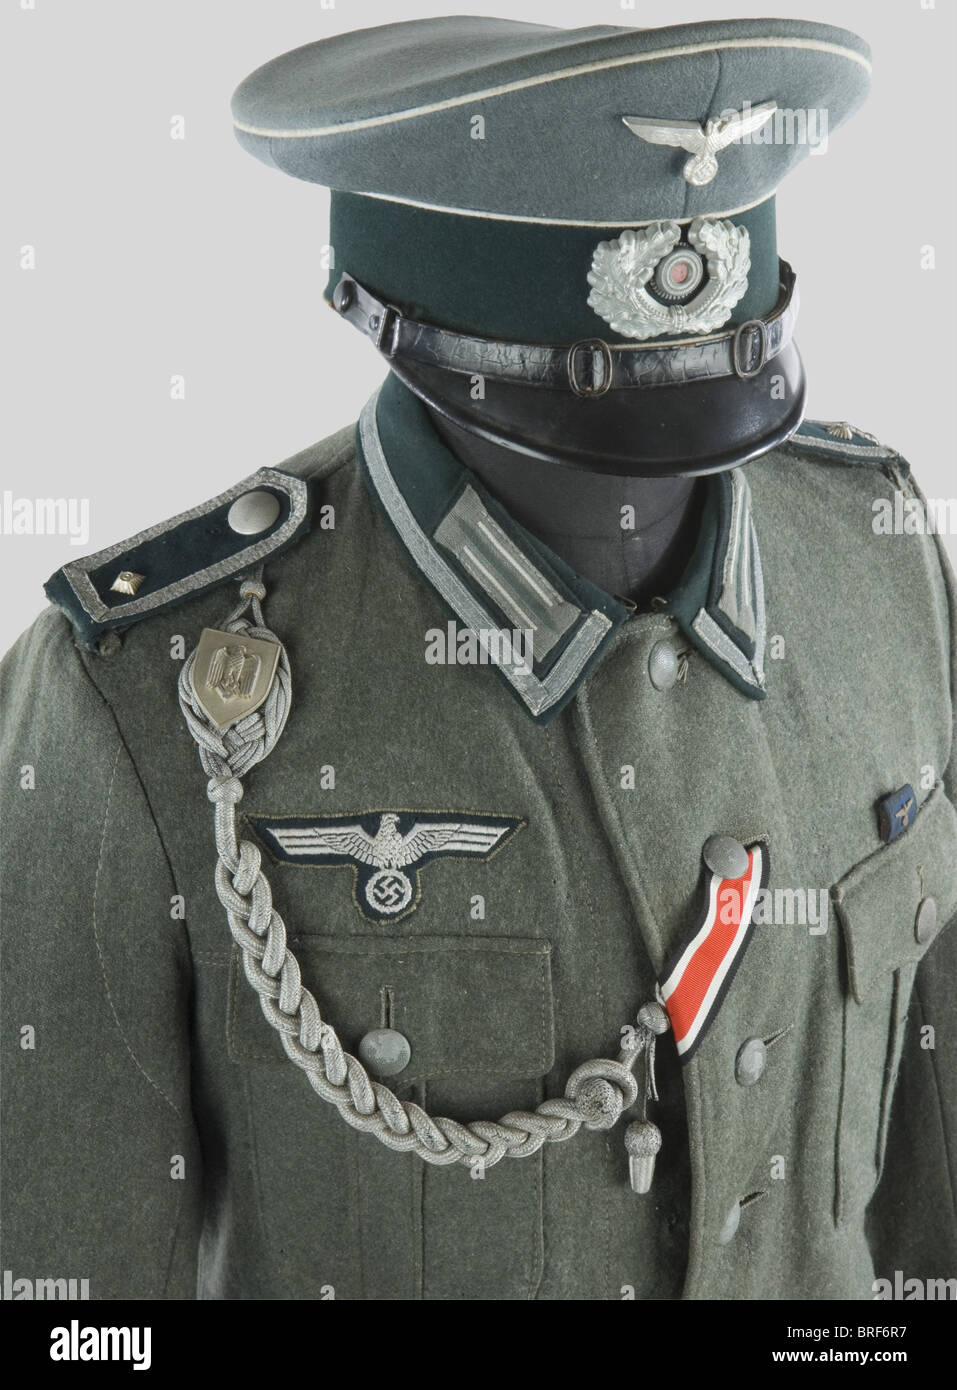 Wehrmacht, Ensemble de Sous-Officier de la Heer, comportant une casquette  troupe en tissu feldgrau, bandeau vert, insignes métalliques, fausse  jugulaire plate en cuir, liseré d'arme blanc. Une vareuse quatre poches de  Feldwebel